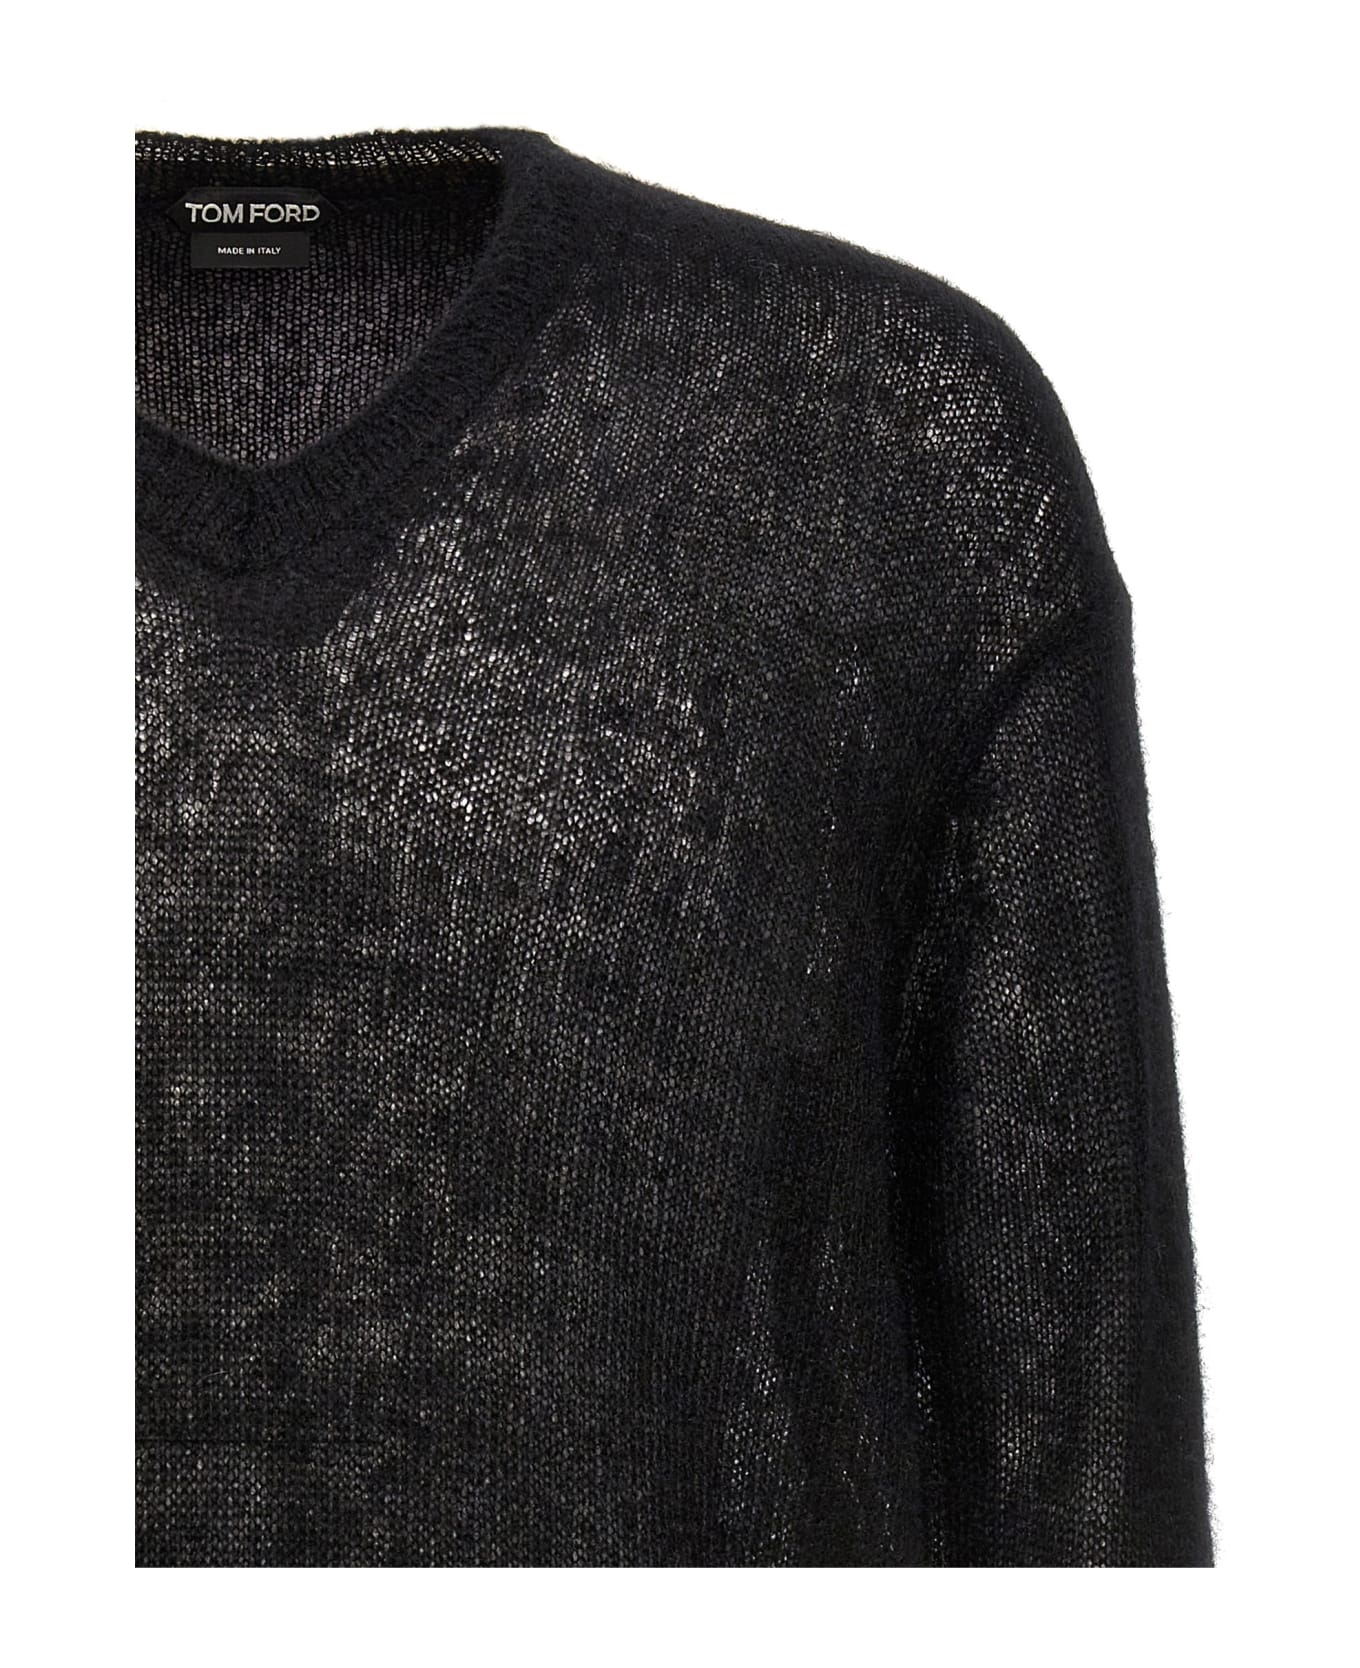 Tom Ford Mohair Sweater - Black ニットウェア